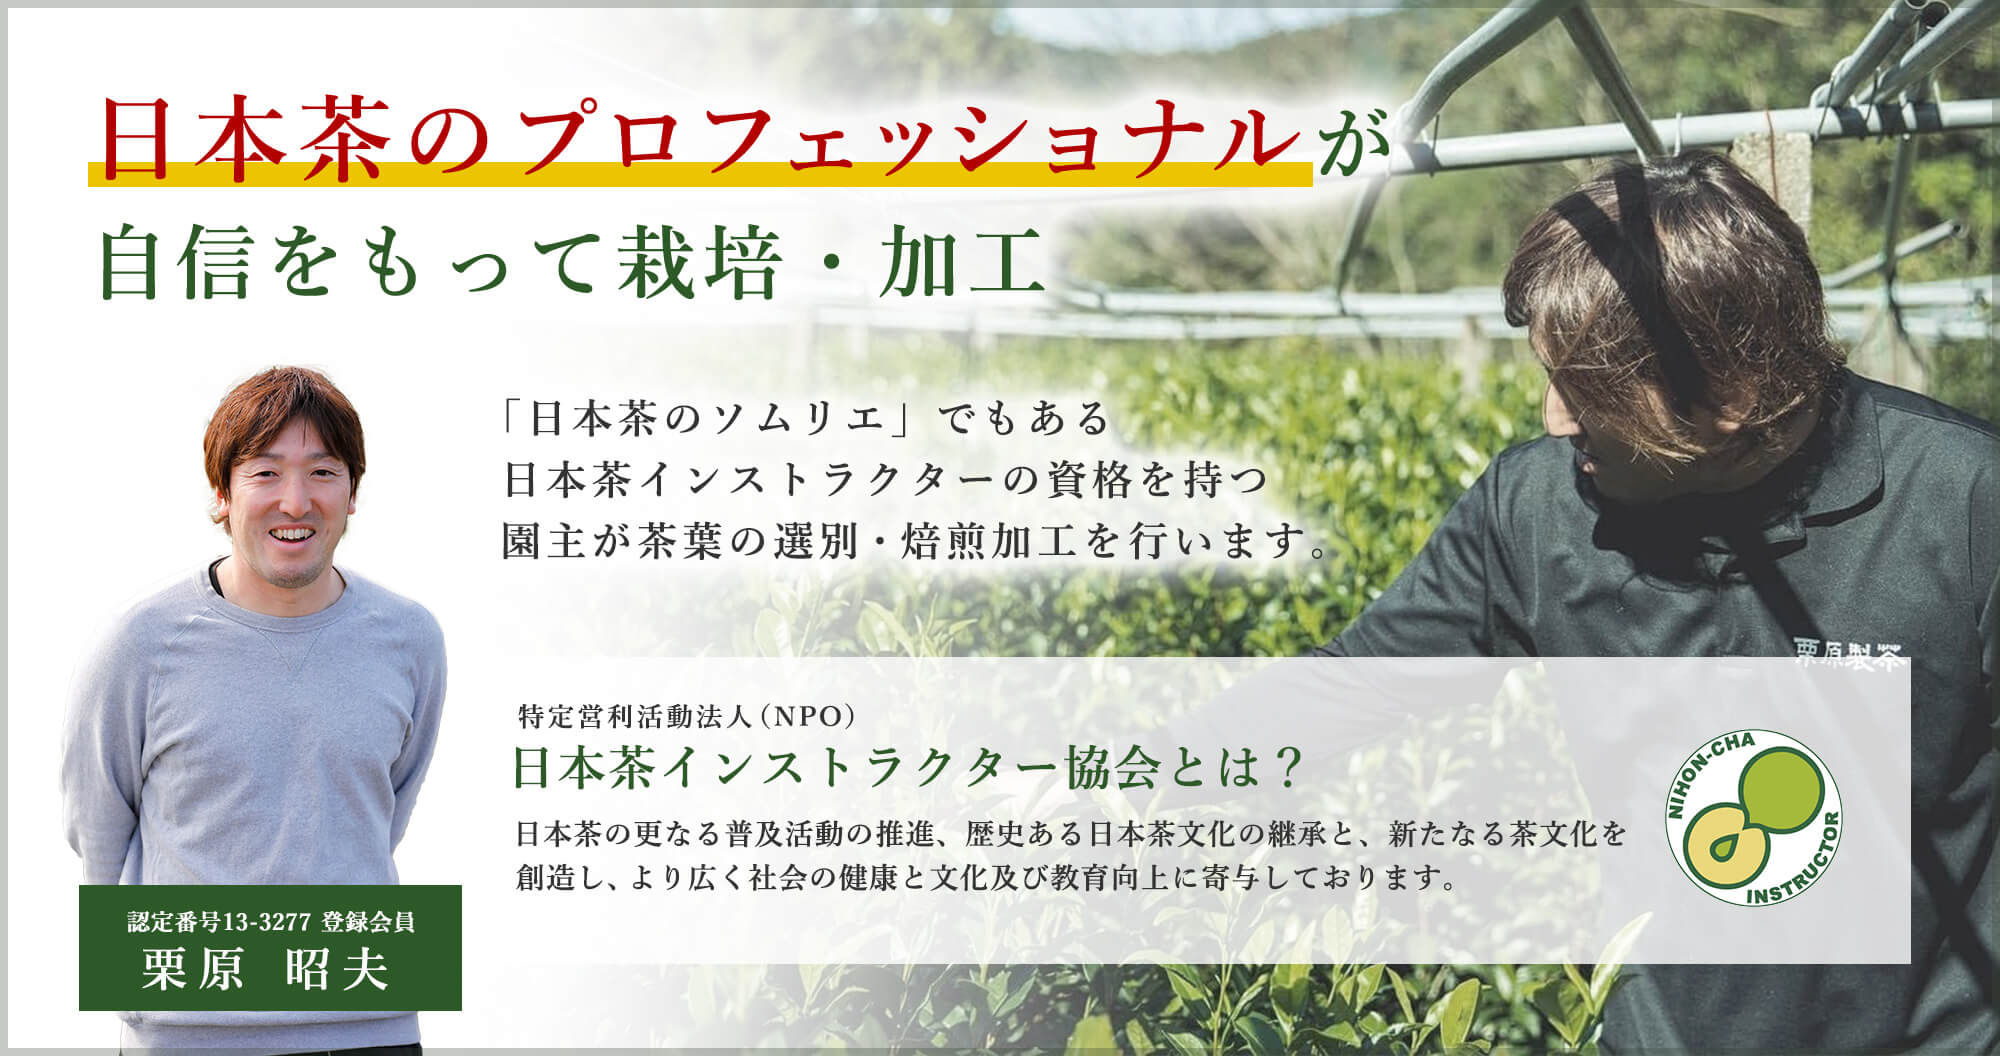 日本茶のプロフェッショナルが自信をもって栽培・加工